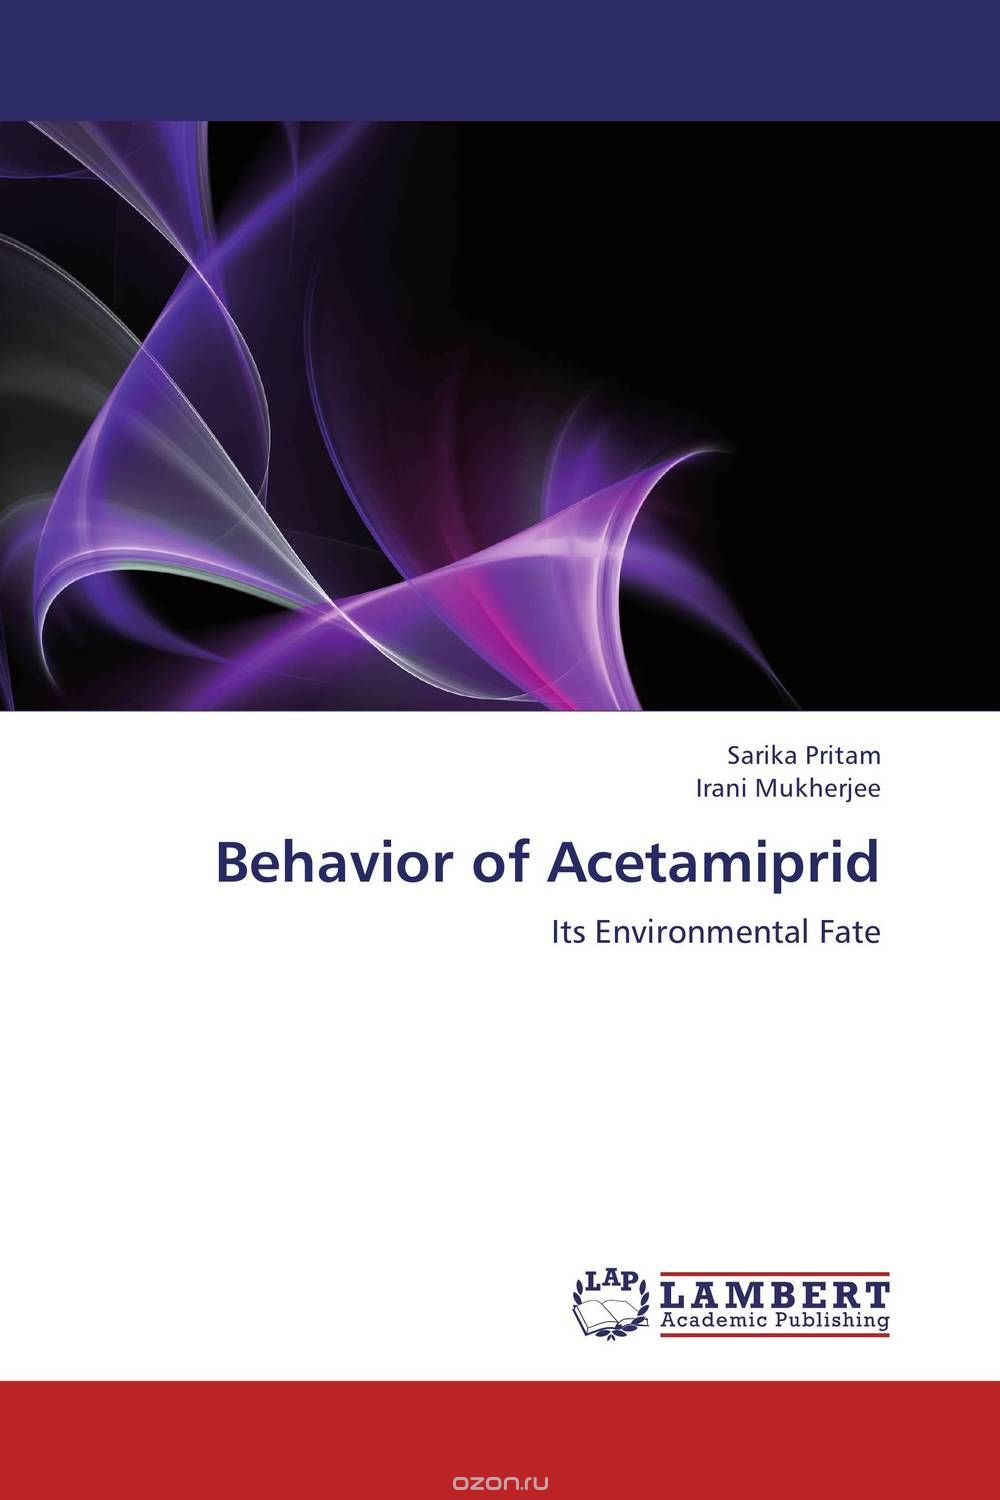 Скачать книгу "Behavior of Acetamiprid"